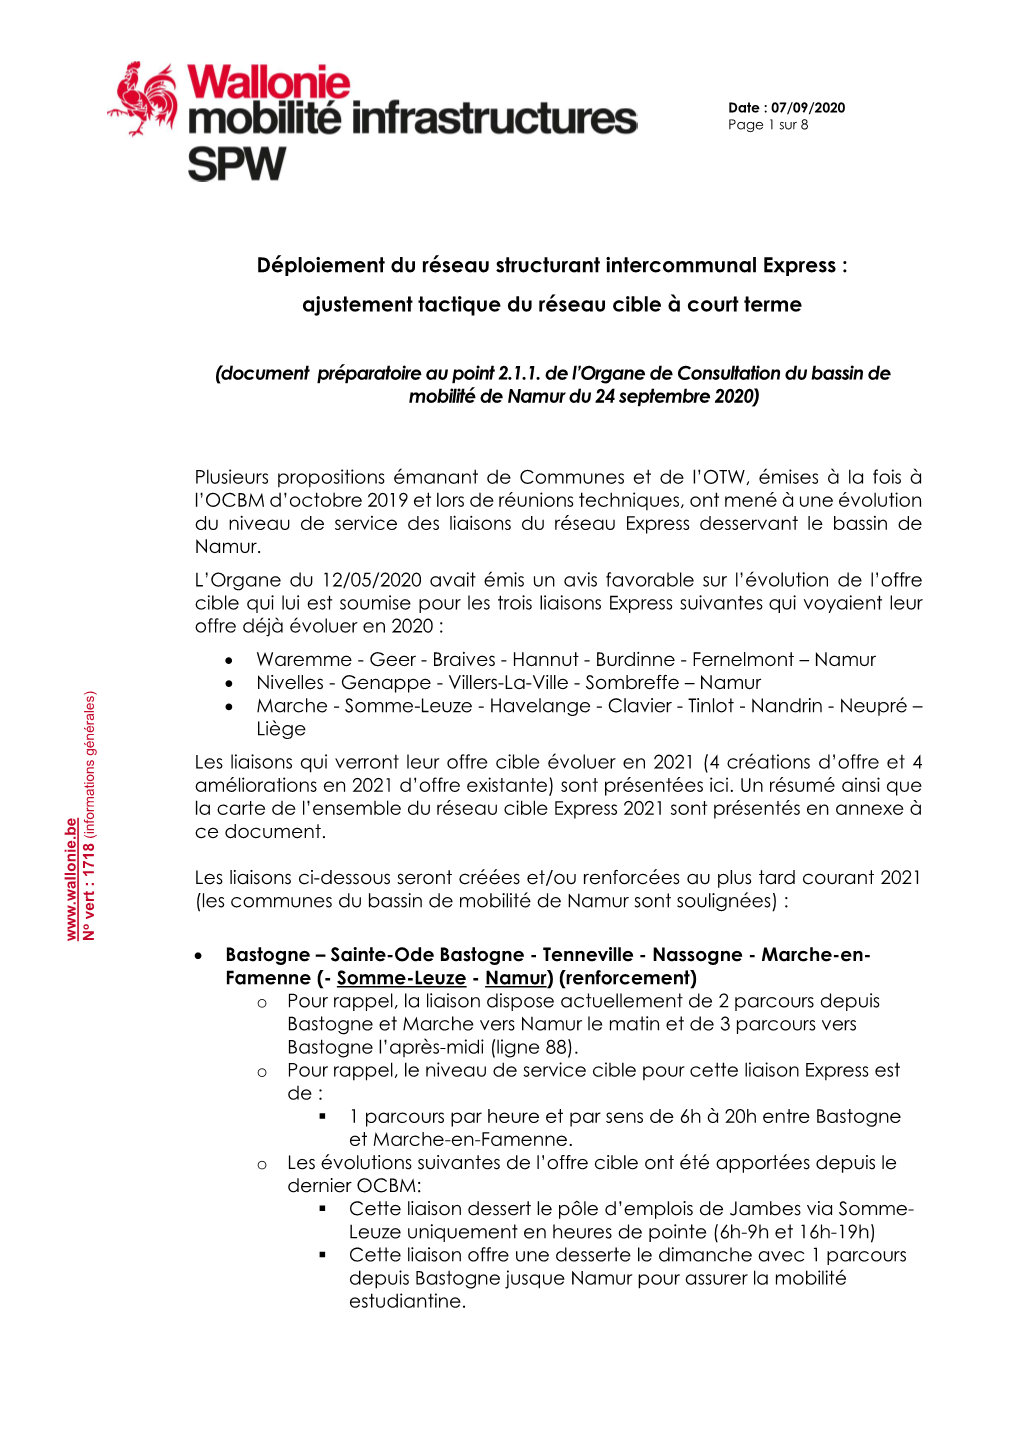 Déploiement Du Réseau Structurant Intercommunal Express : Ajustement Tactique Du Réseau Cible À Court Terme